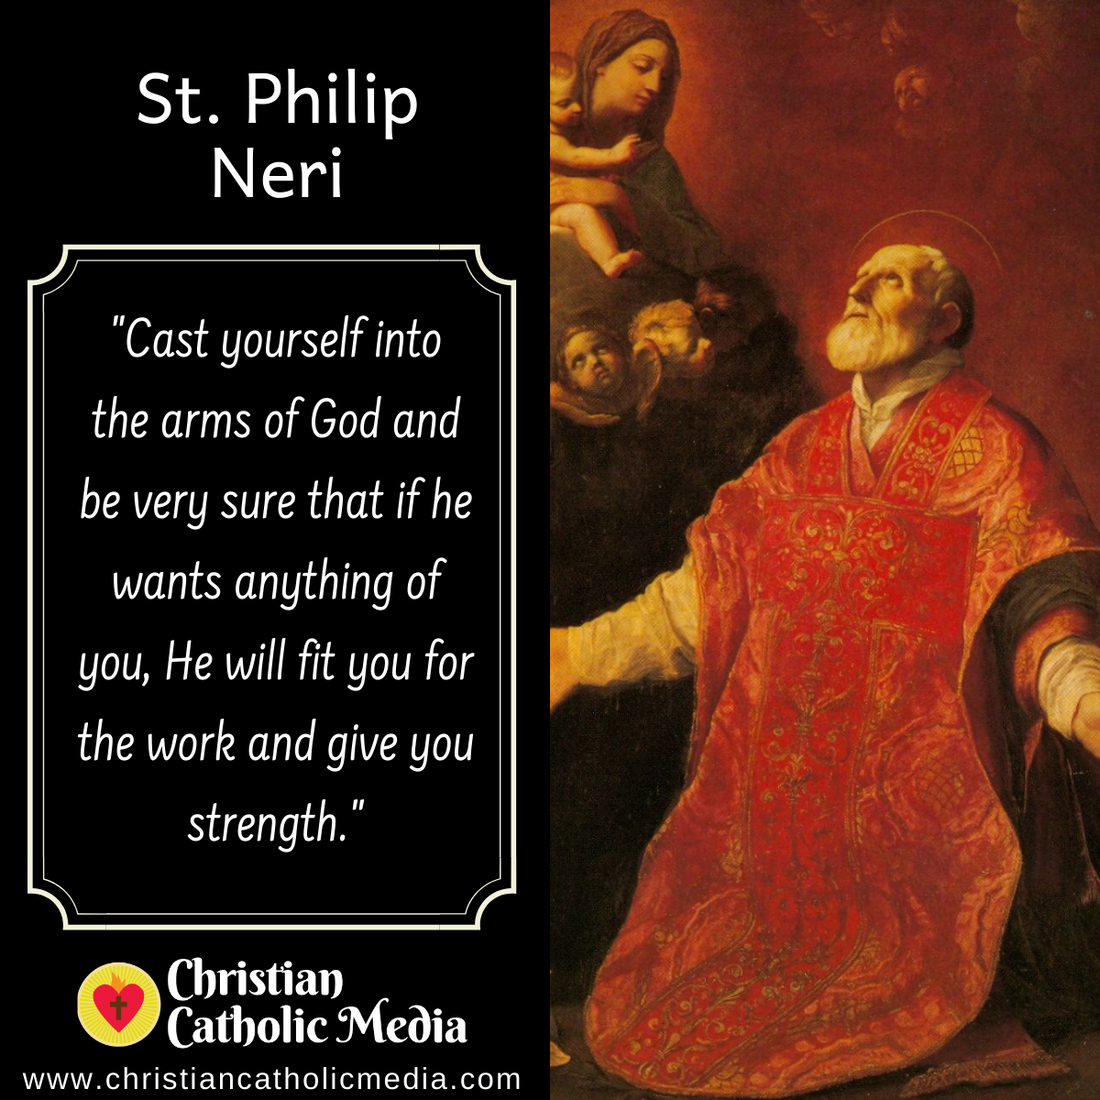 St. Philip Neri - Wednesday May 26, 2021